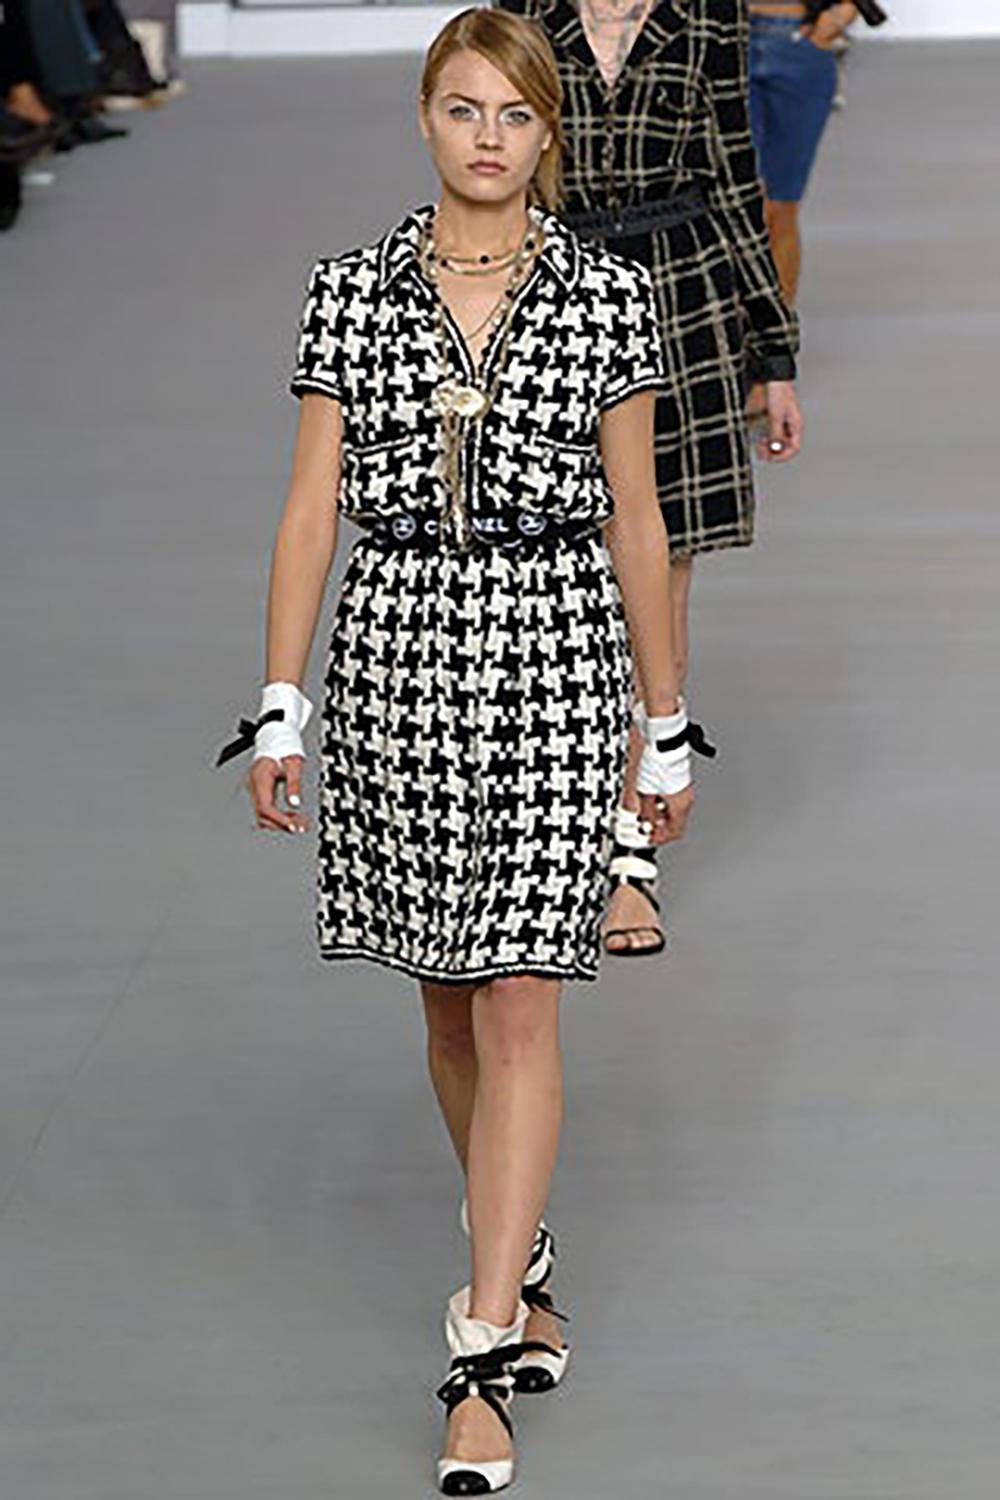 Extrem selten, Sammler Chanel Band Tweed  Jacke mit CC 'CHANEL' Logo-Band an der Taille. 
Boutique-Preis über 9.000$
- Frontverschluss mit Reißverschluss
- volles schwarzes Seidenfutter
Größenbezeichnung 38 FR. Der Zustand ist tadellos.